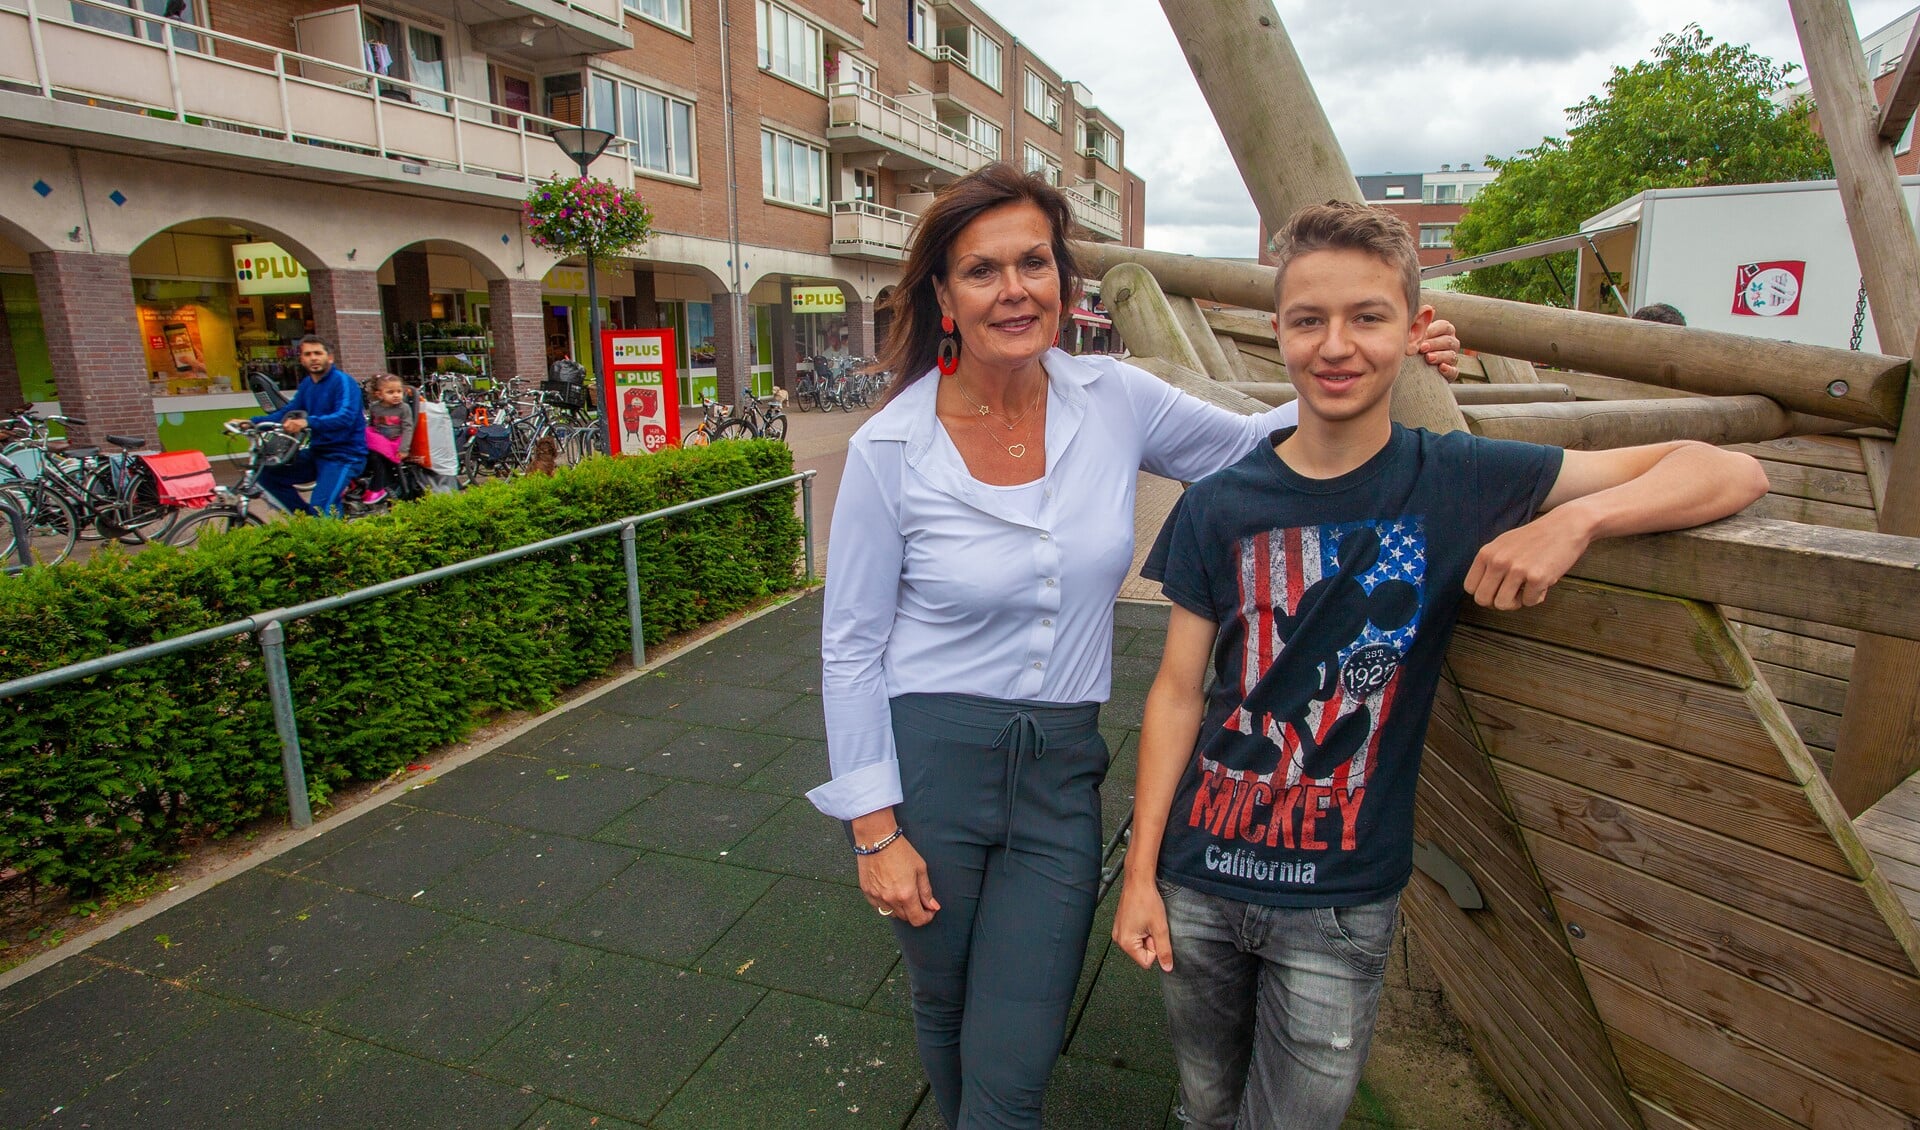 Blije gezichten bij Alan von Michaelis van de petitie voor de koopzondag en Anita Koning van Winkeliersvereniging Oostermeent.